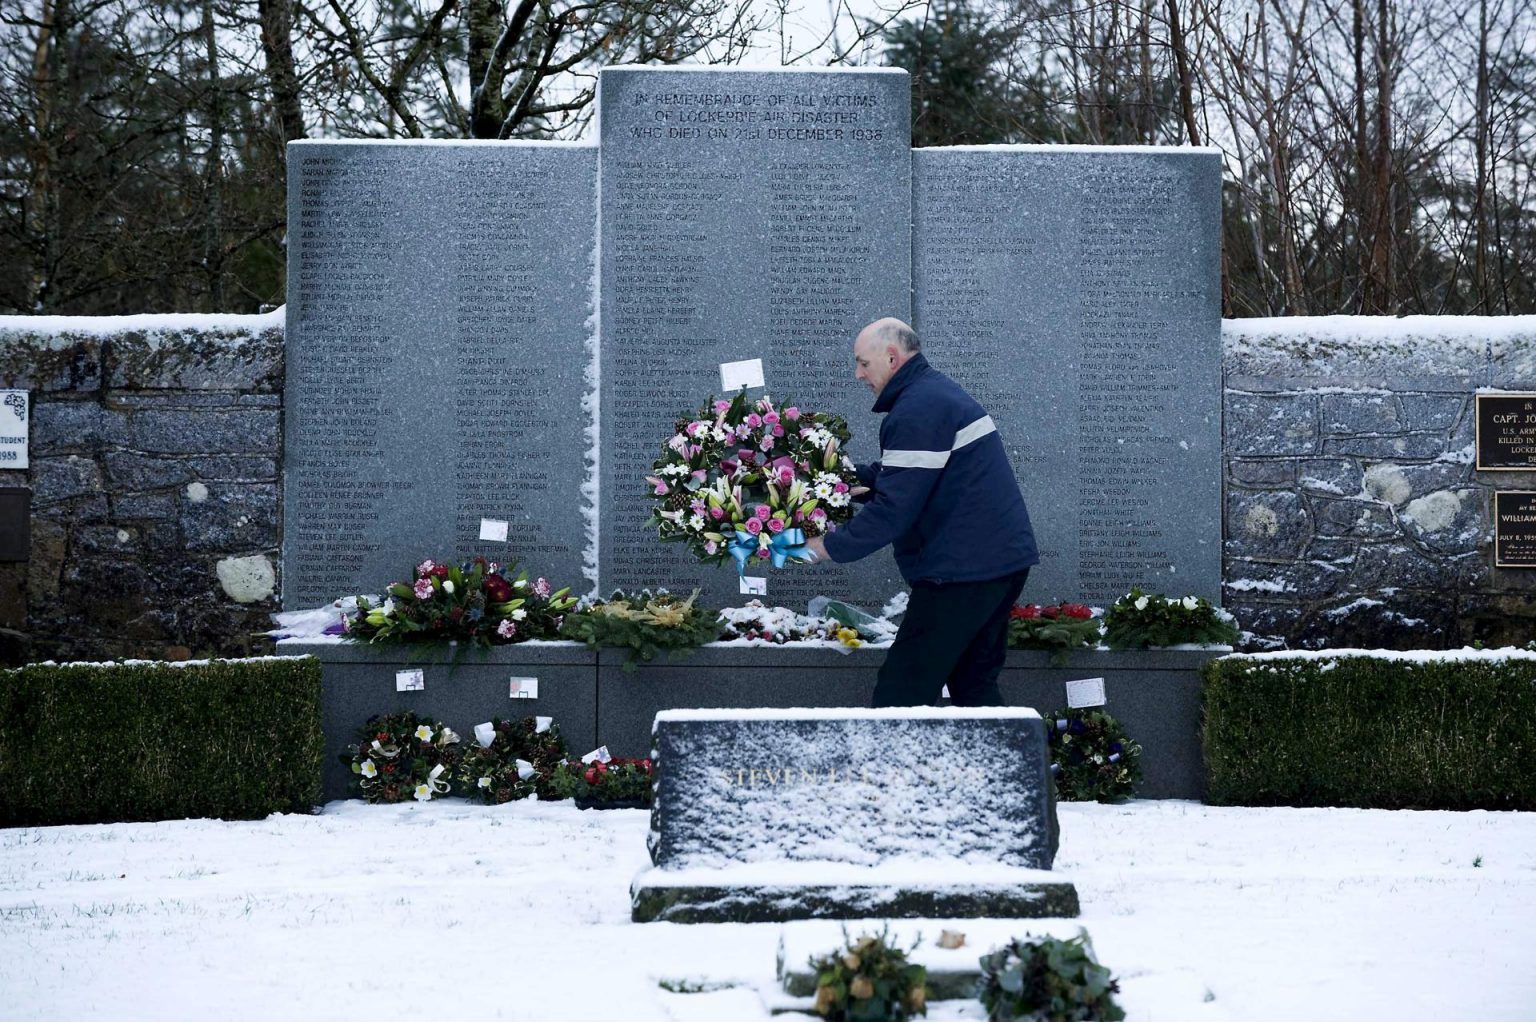 Un hombre transporta un arreglo floral en el parque conmemorativo a las víctimas del atentado de Lockerbie, en el cementerio de Dryfesdale en Lockerbie, Reino Unido. Imagen de archivo. EFE/BRIAN STEWART